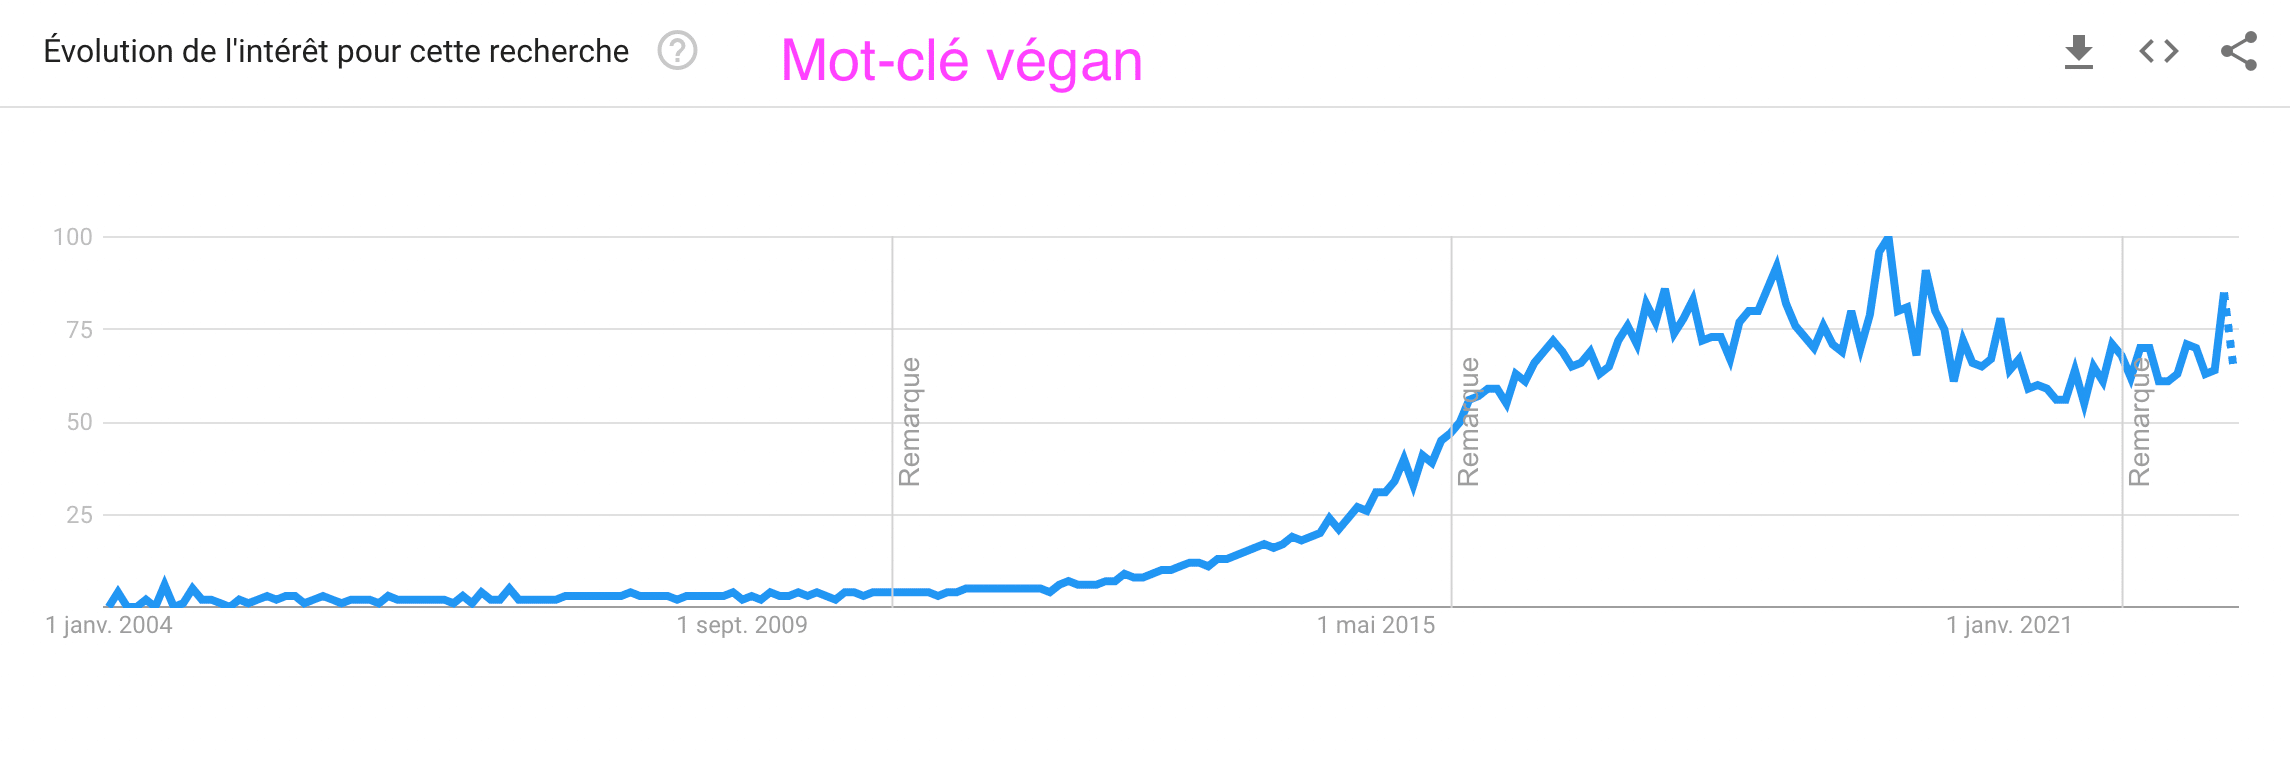 Évolution de l'intérêt pour la requête clé vegan selon Google Trends